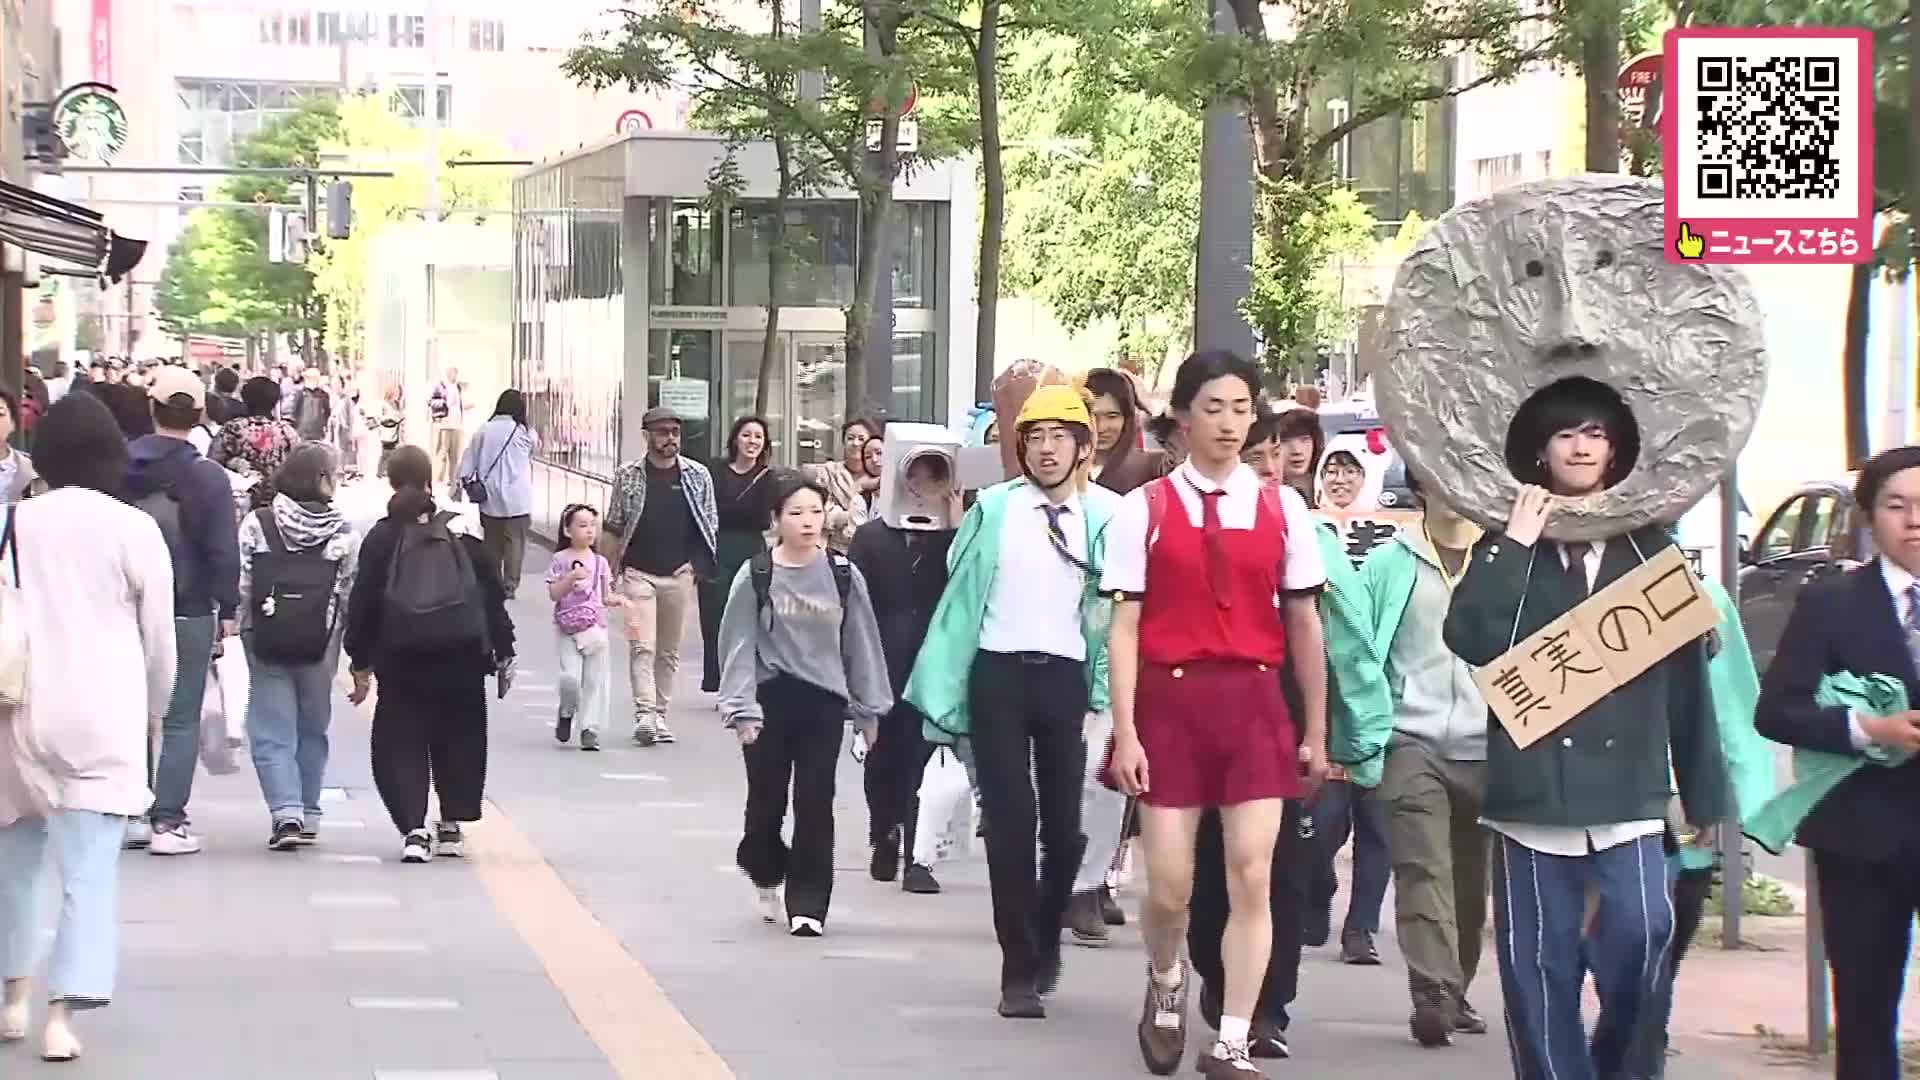 真実の口、初音ミクで仮装行列 ”北大祭”のプレ企画 札幌農学校時代から100年以上続く伝統行事で北大生が街を練り歩く